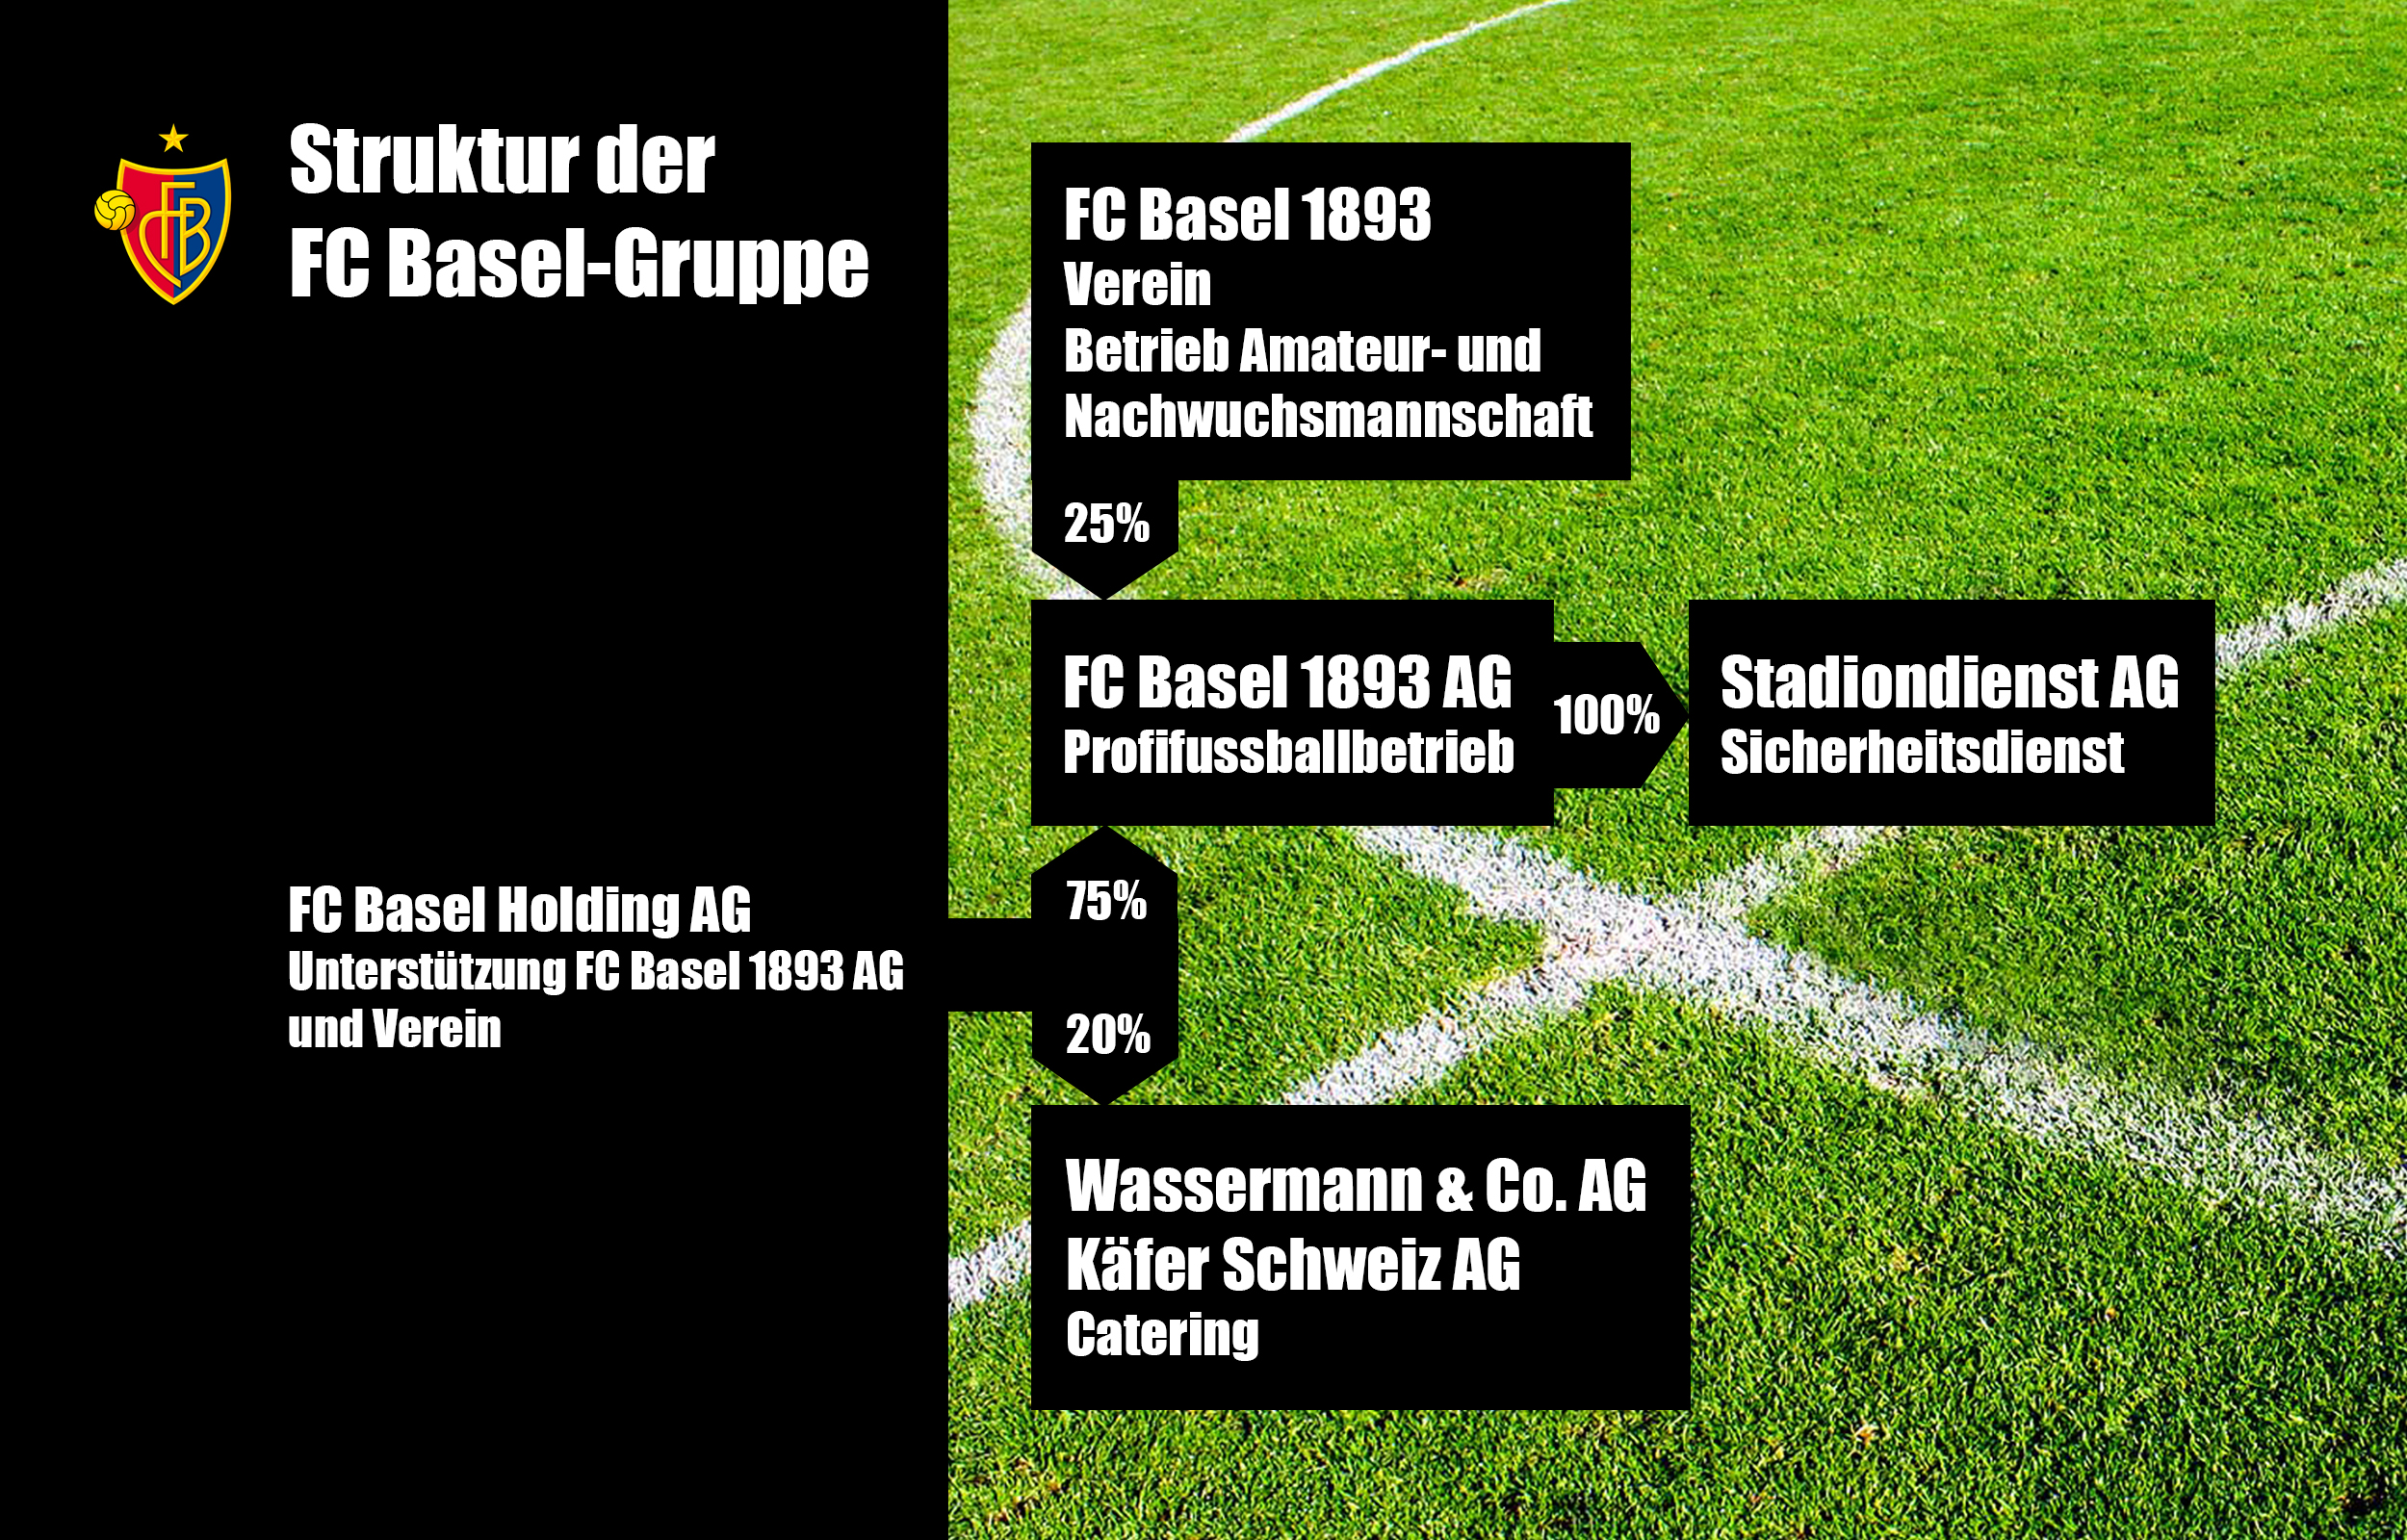 Die FC Basel-Gruppe und die Beteiligungen im Jahr 2016.